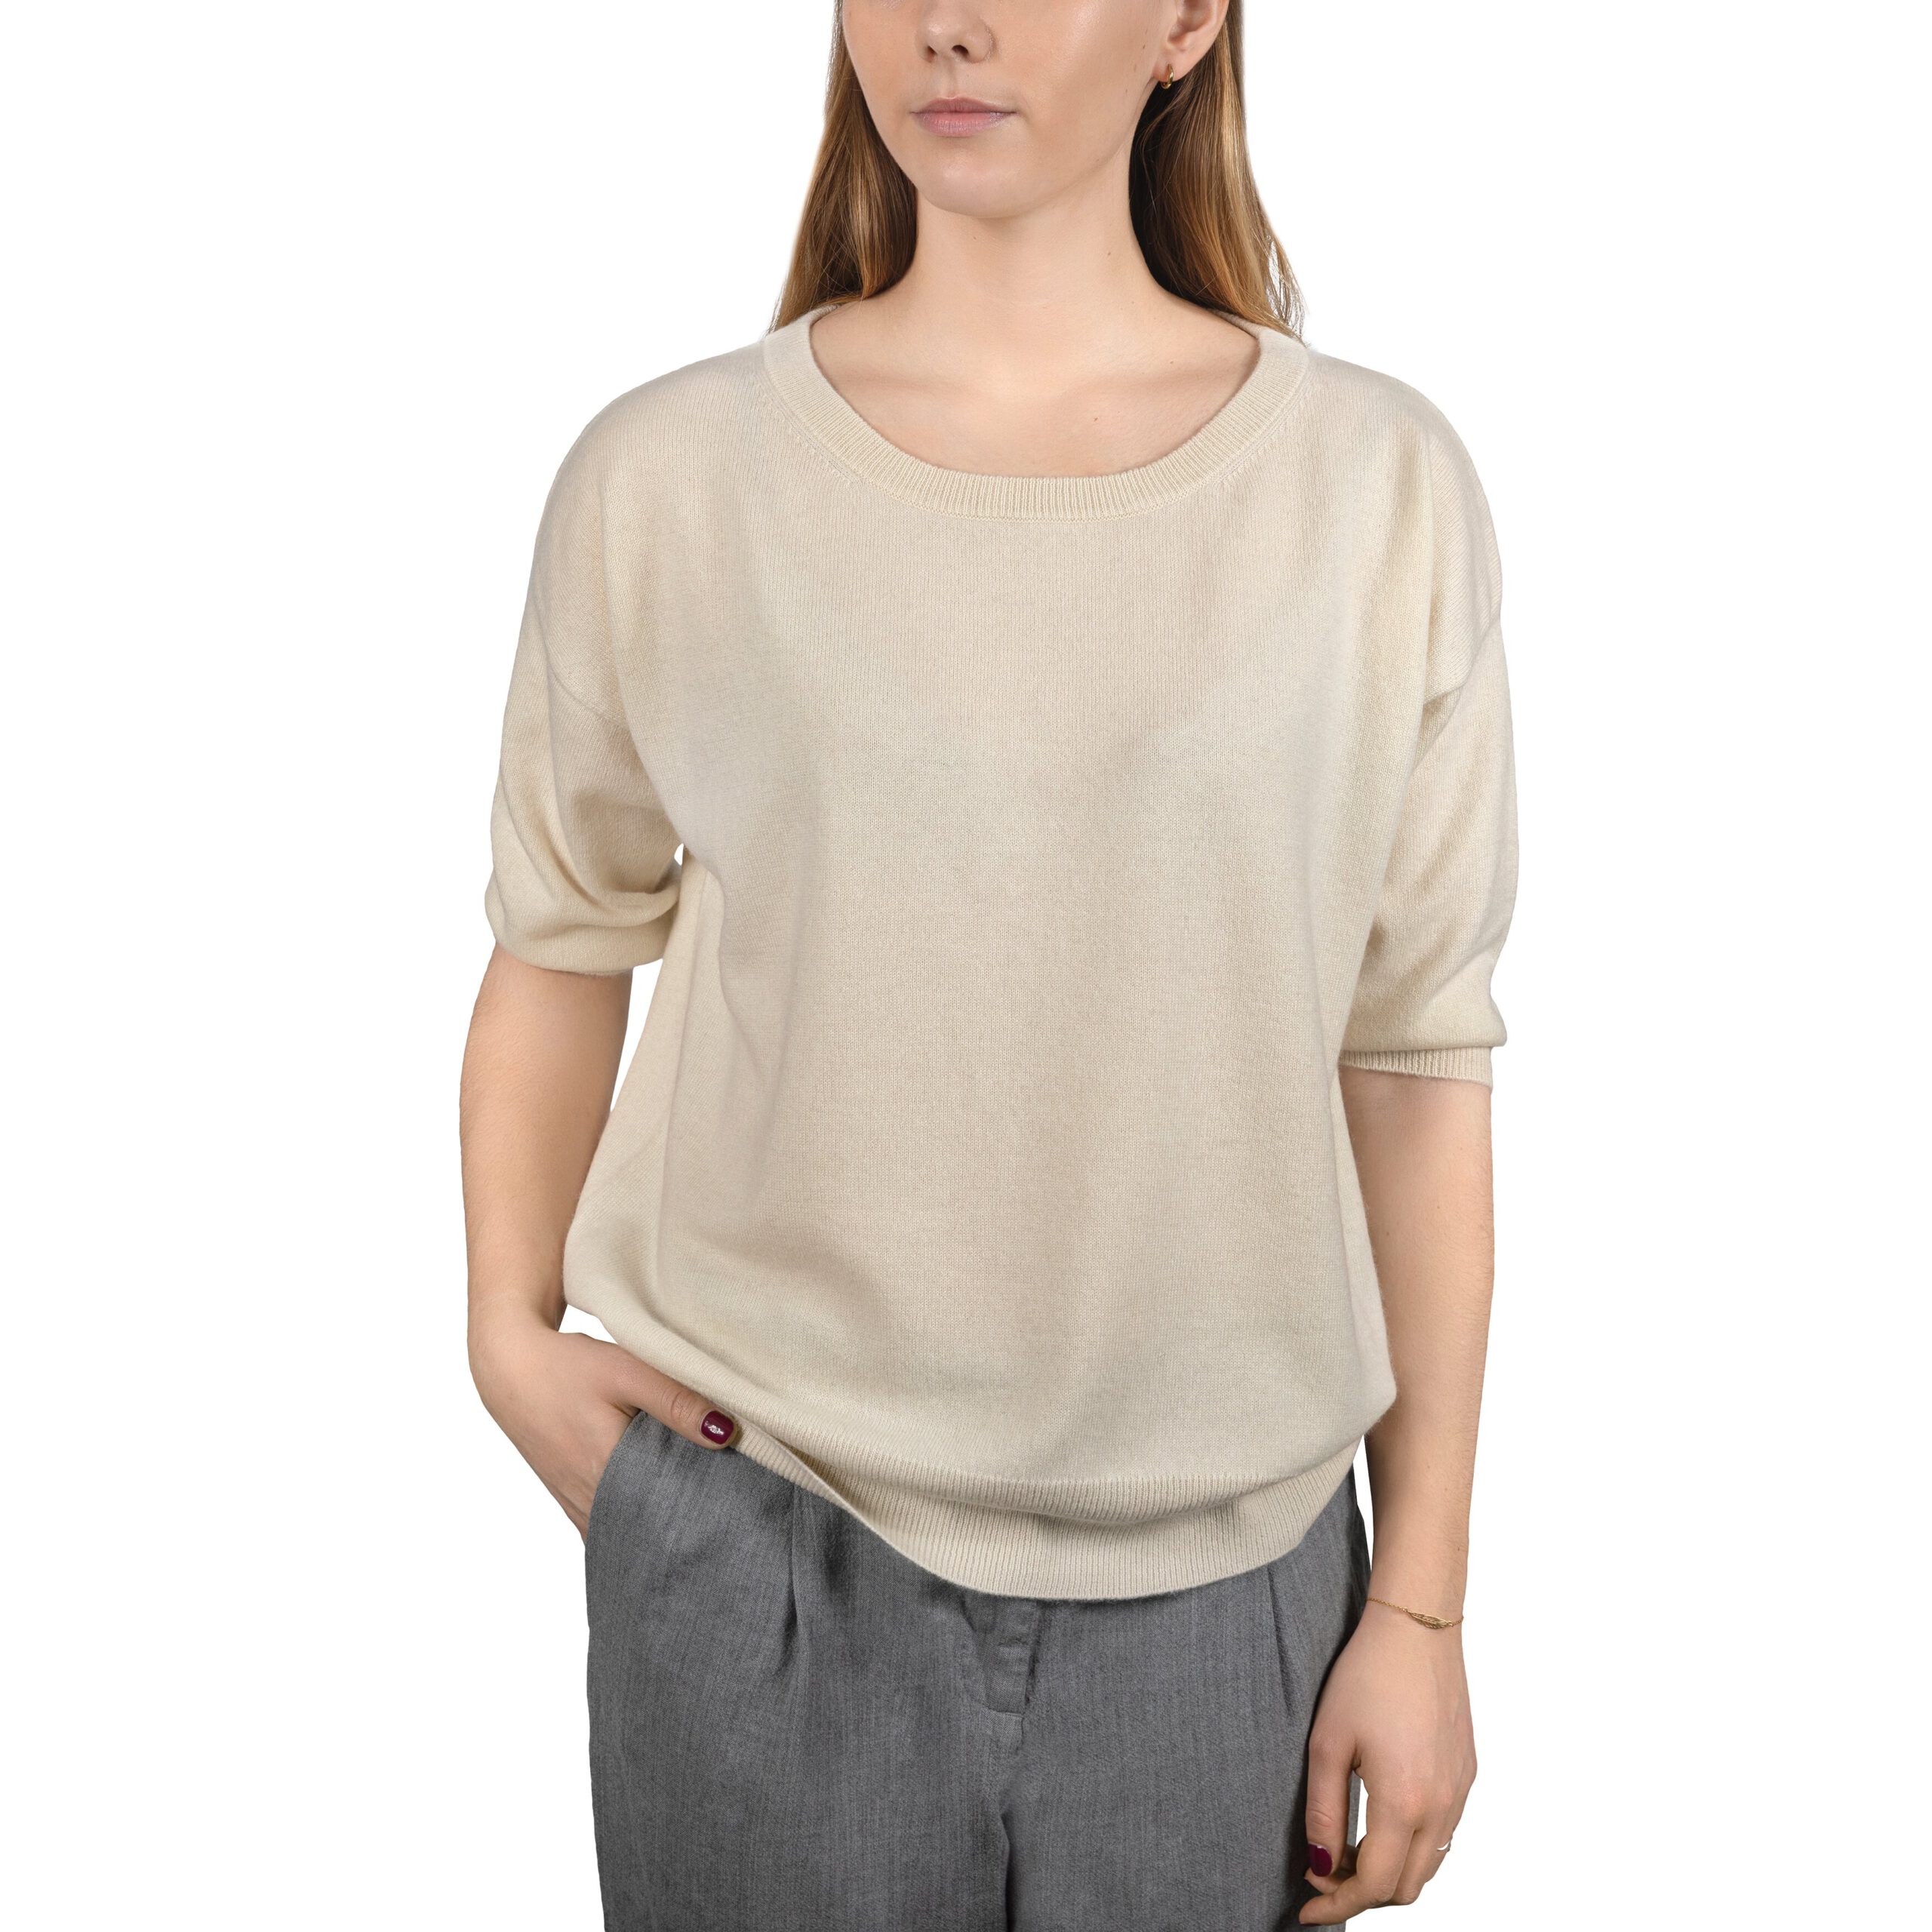 Kaszmirowy sweter z krótkim rękawem w kolorze kremowym na modelce od przodu